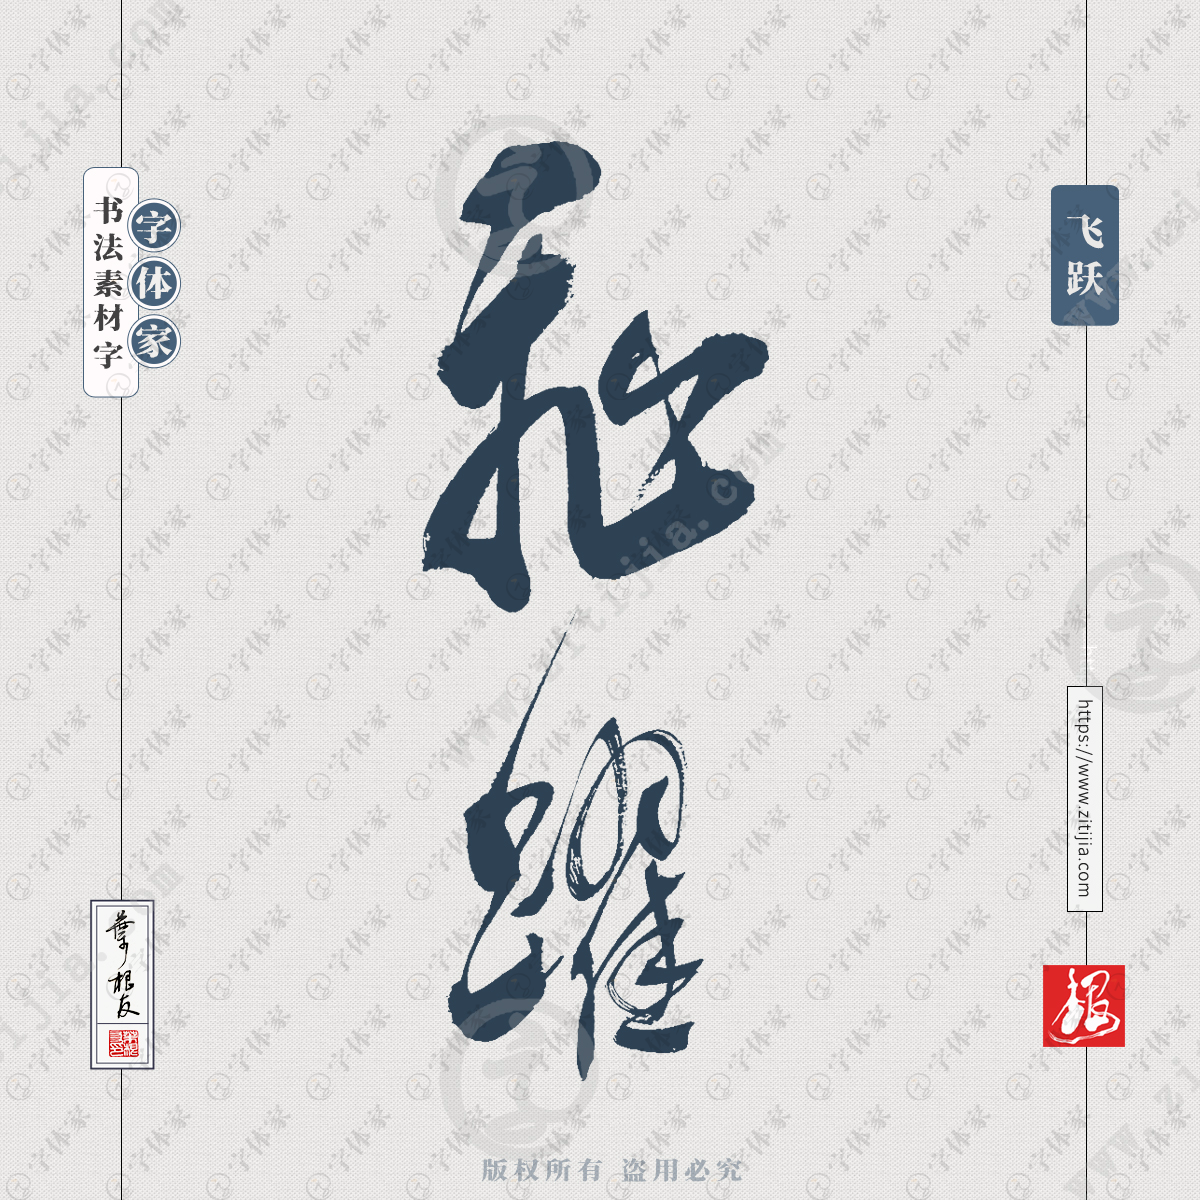 飞跃中国风叶根友书法字体可下载源文件书法素材